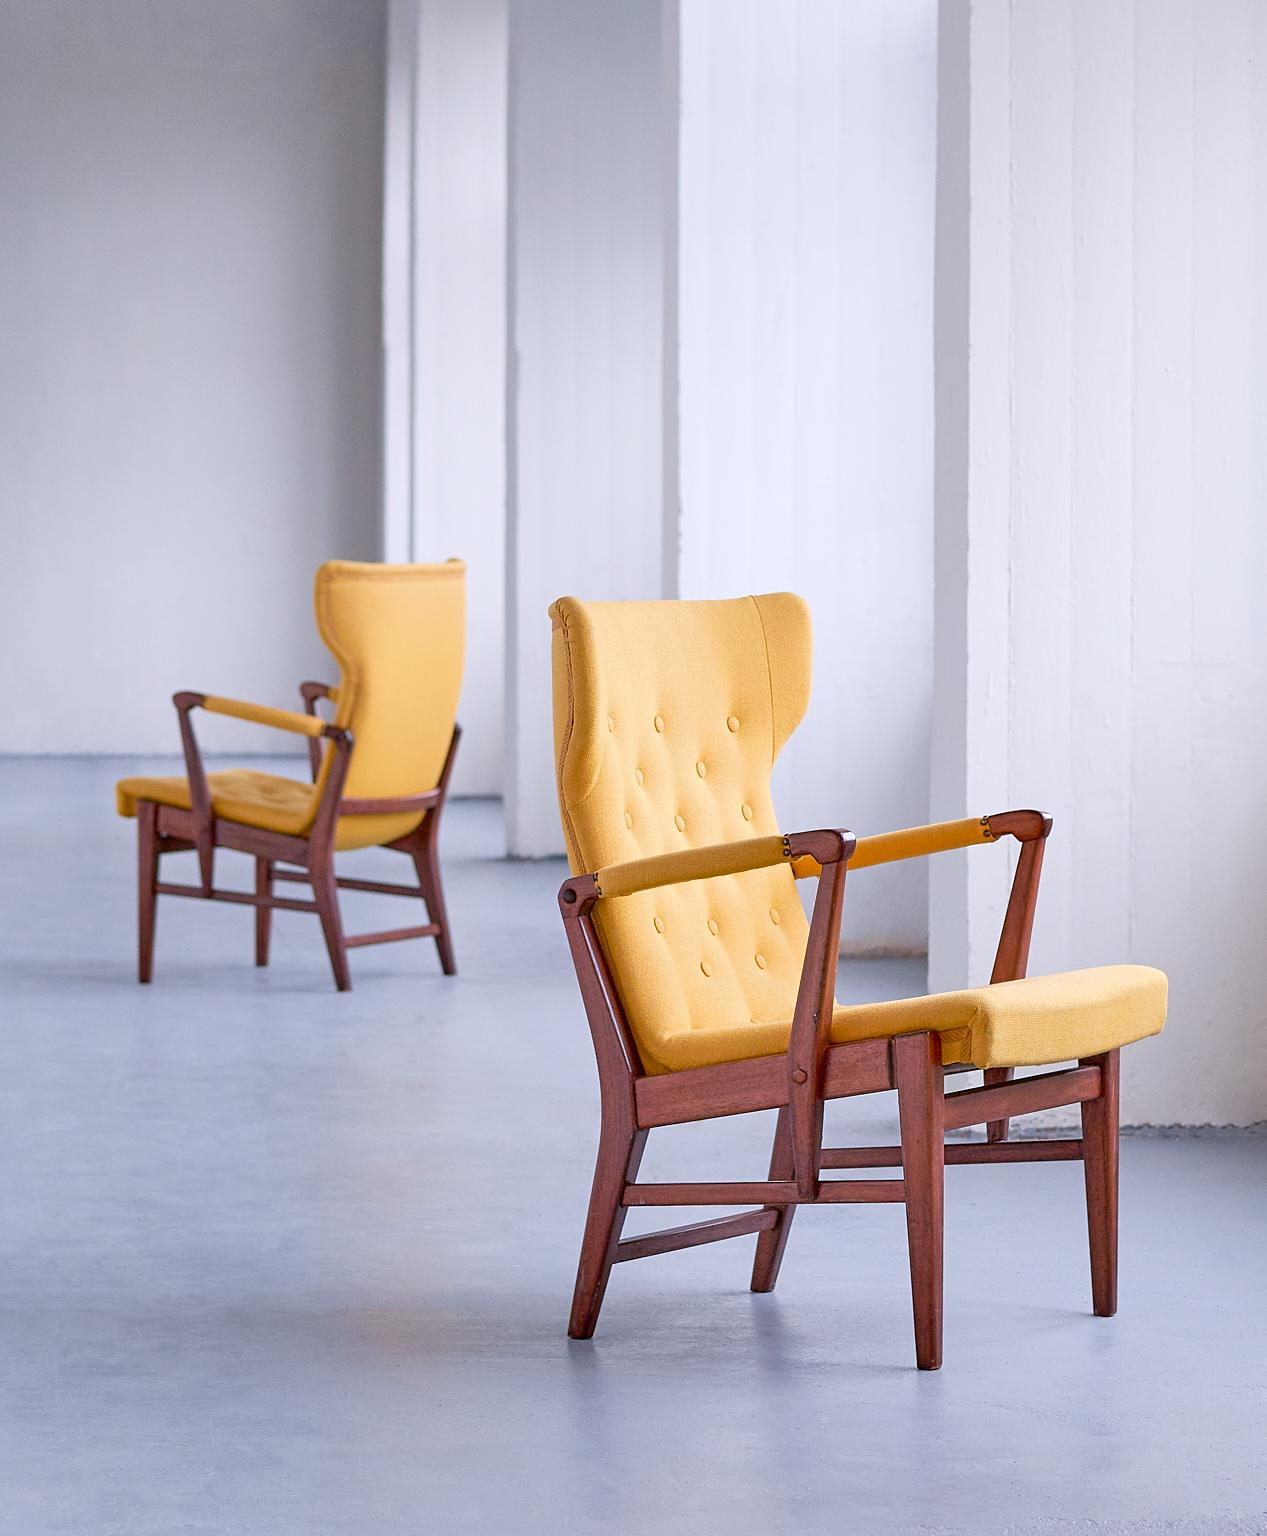 Dieses seltene Sesselpaar wurde von Bertil Söderberg entworfen und in den 1940er Jahren von Nordiska Kompaniet in Schweden hergestellt. Die elegante Form des Designs wird durch die geknöpfte, flügelförmige Rückenlehne und Sitzfläche unterstrichen.